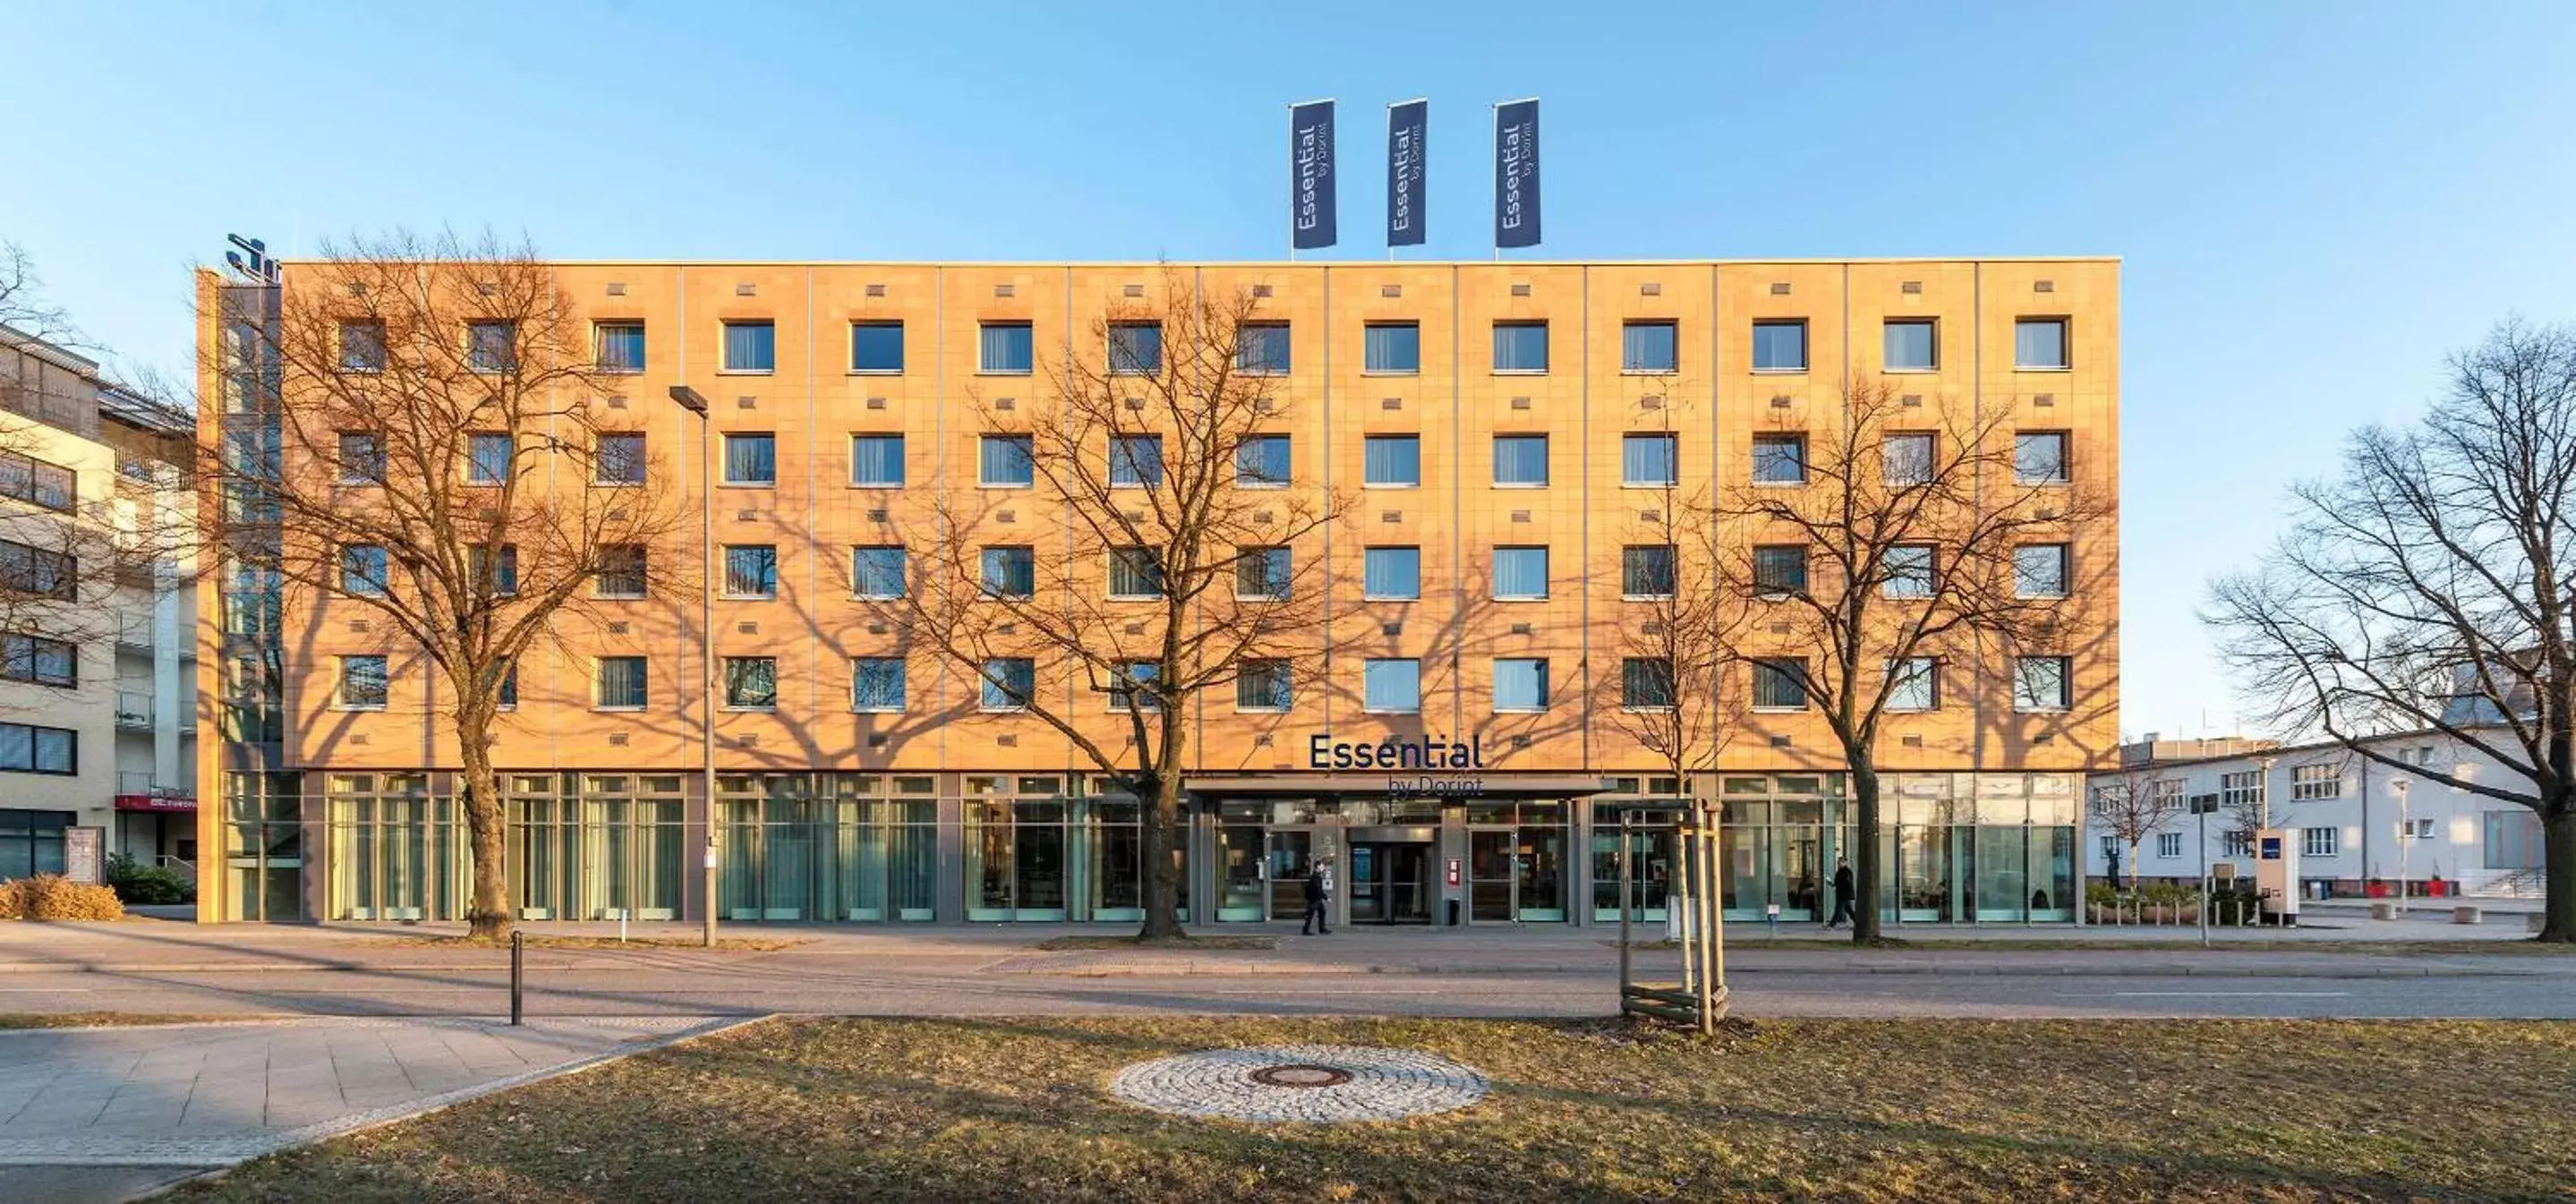 Property Building in Essential by Dorint Berlin-Adlershof